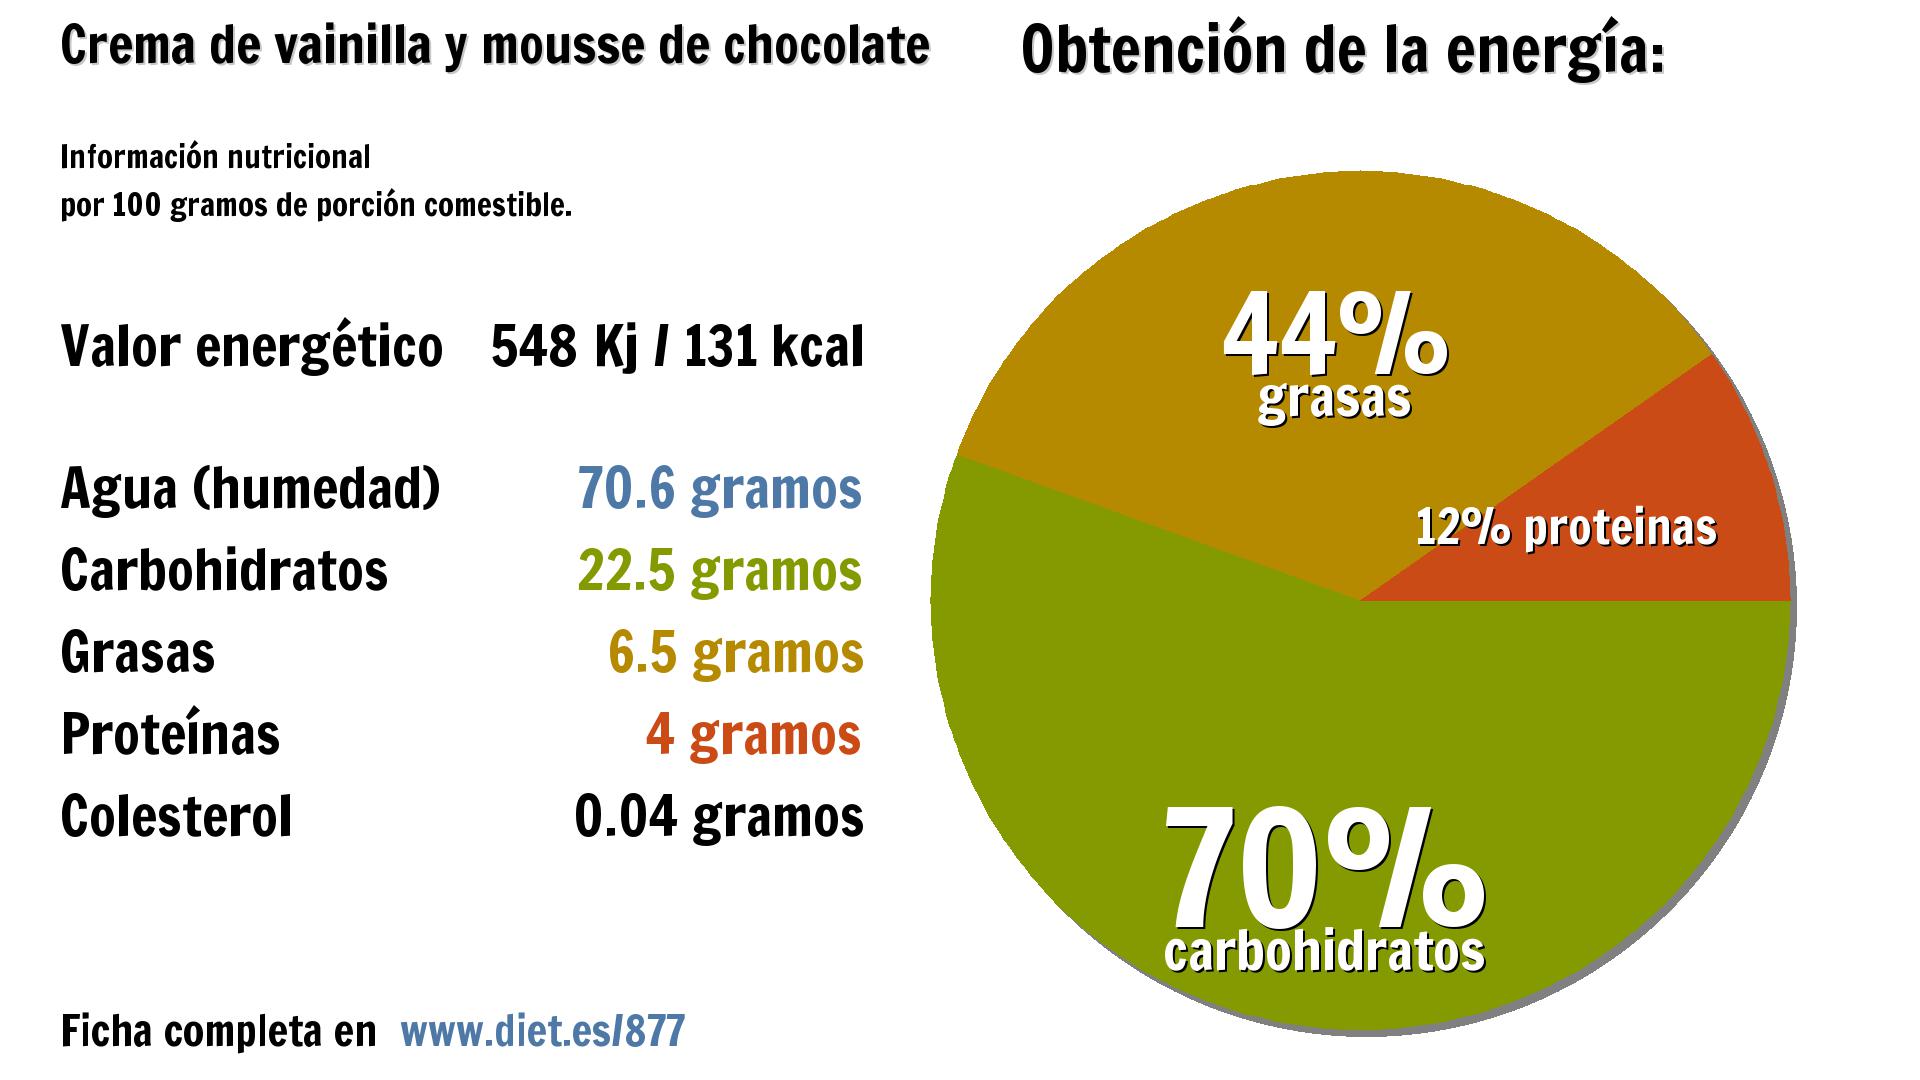 Crema de vainilla y mousse de chocolate: energía 548 Kj, agua 71 g., carbohidratos 23 g., grasas 7 g. y proteínas 4 g.